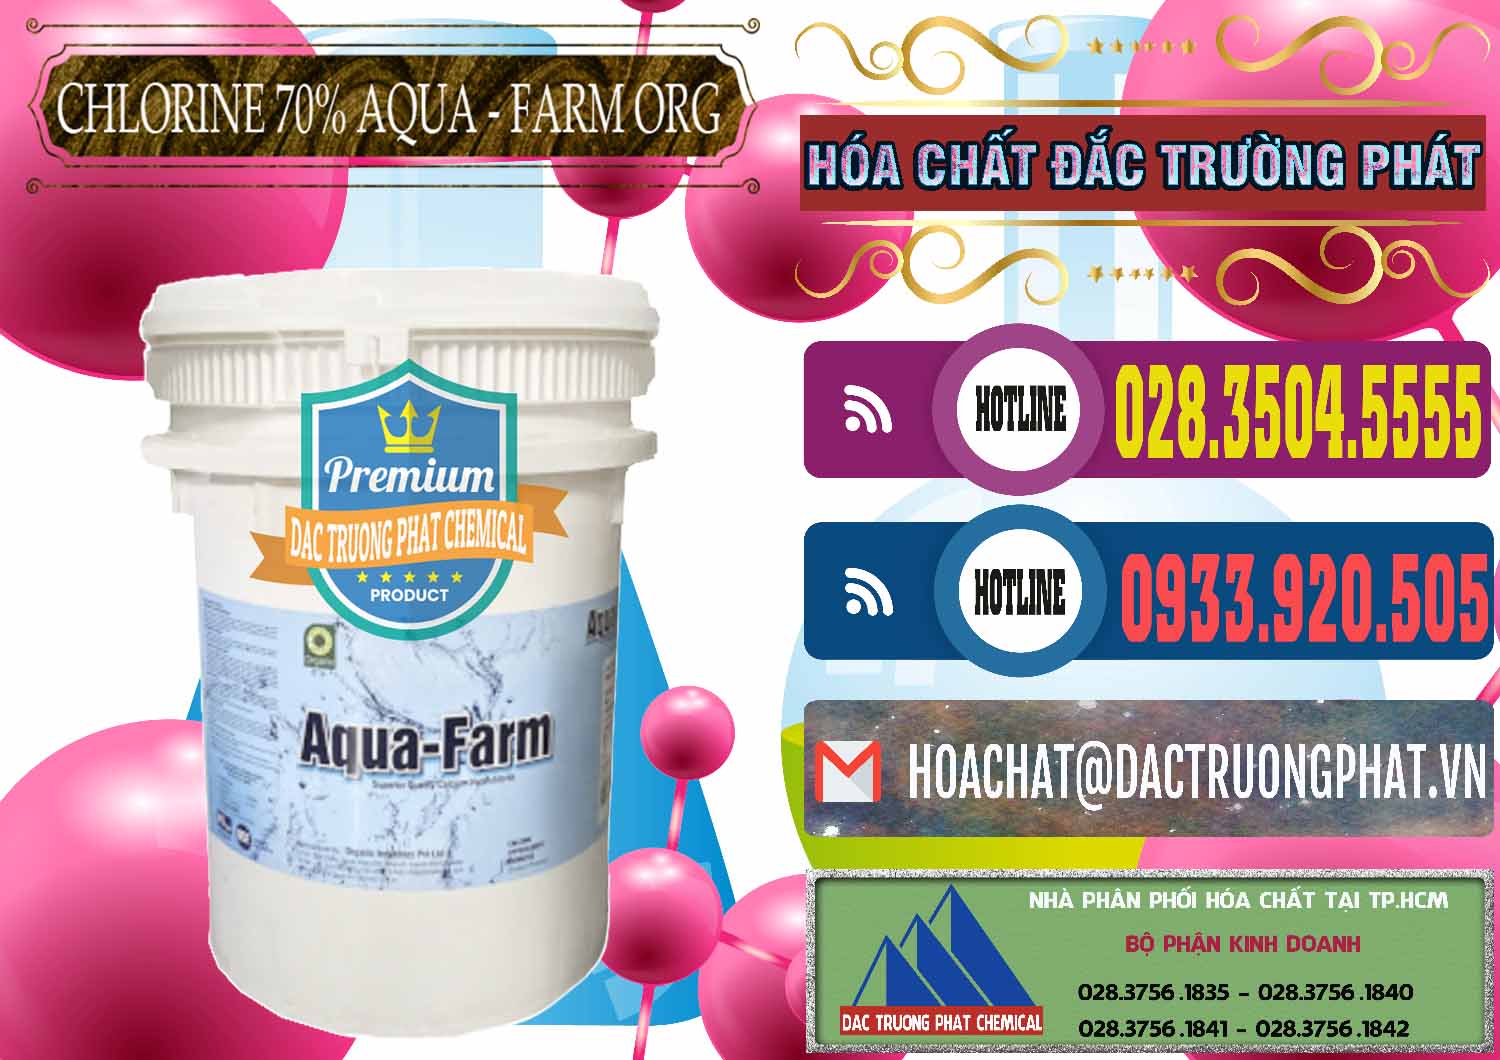 Nơi chuyên nhập khẩu & bán Chlorine – Clorin 70% Aqua - Farm ORG Organic Ấn Độ India - 0246 - Chuyên bán và cung cấp hóa chất tại TP.HCM - muabanhoachat.com.vn